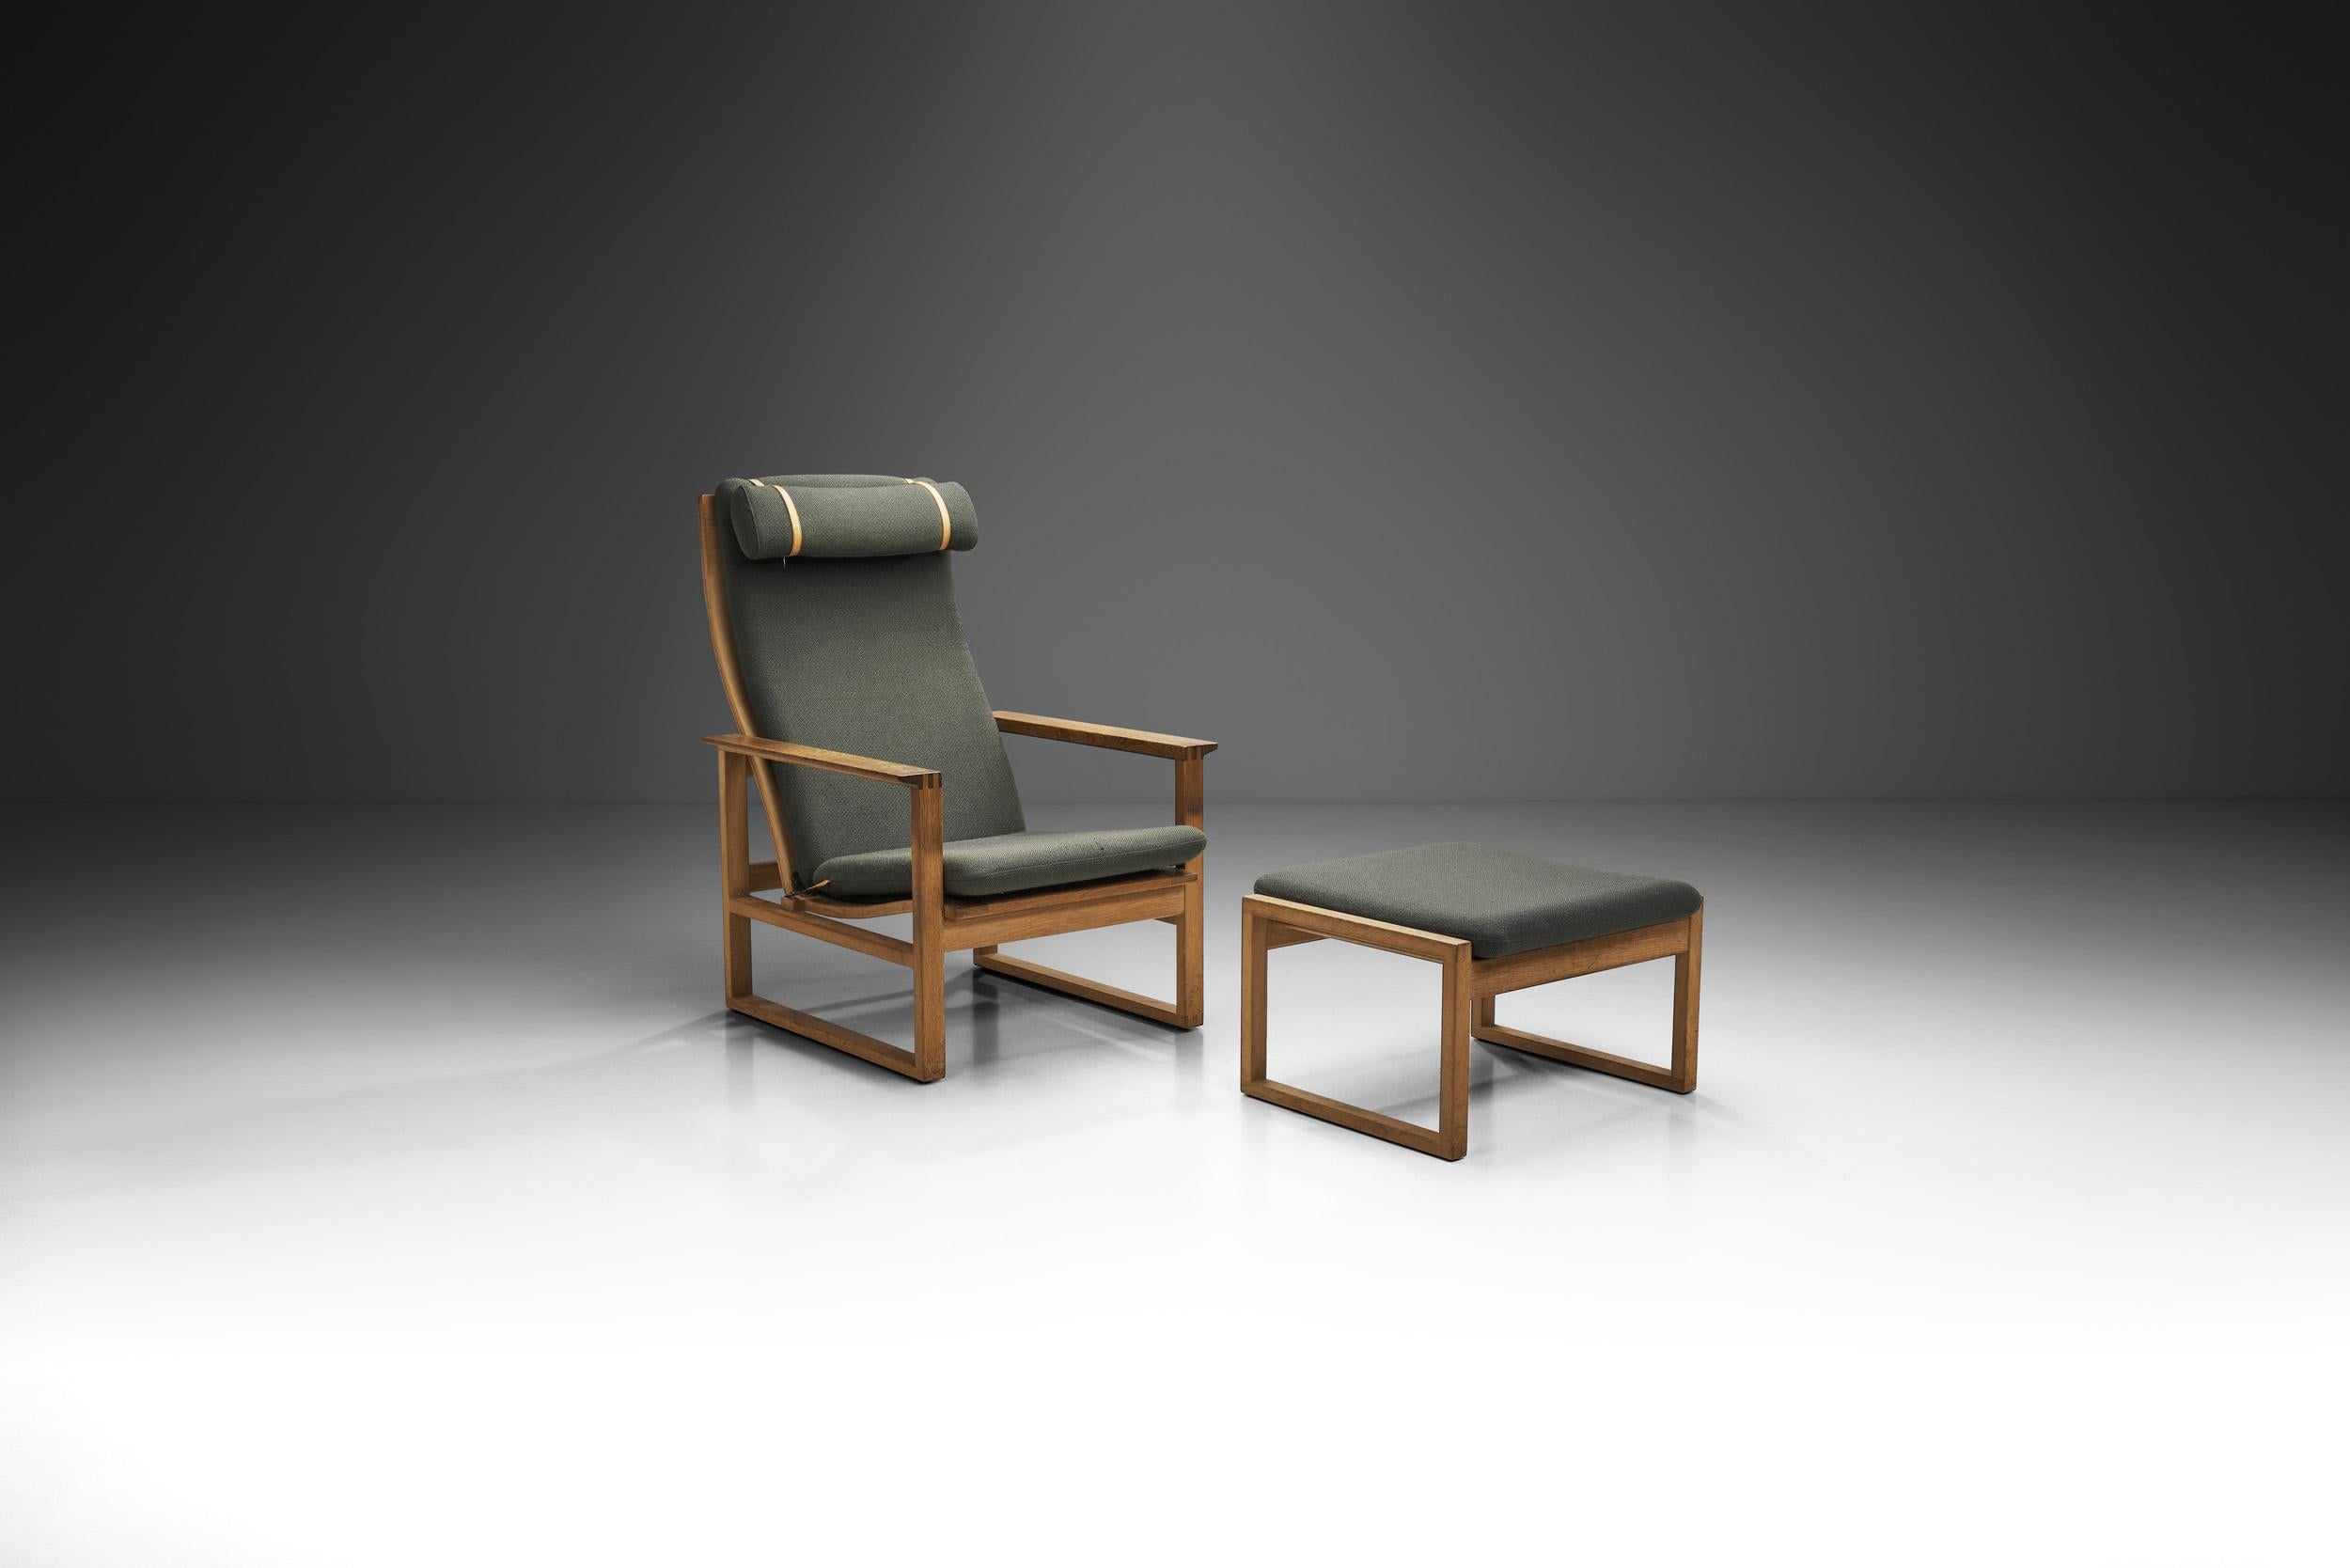 Les conceptions de Borge Mogensen sont axées sur la fonctionnalité, l'aspect minimaliste et la facilité d'accès. Cette chaise longue est peut-être l'un des meilleurs exemples de ces principes du maître danois. La chaise à deux positions du modèle